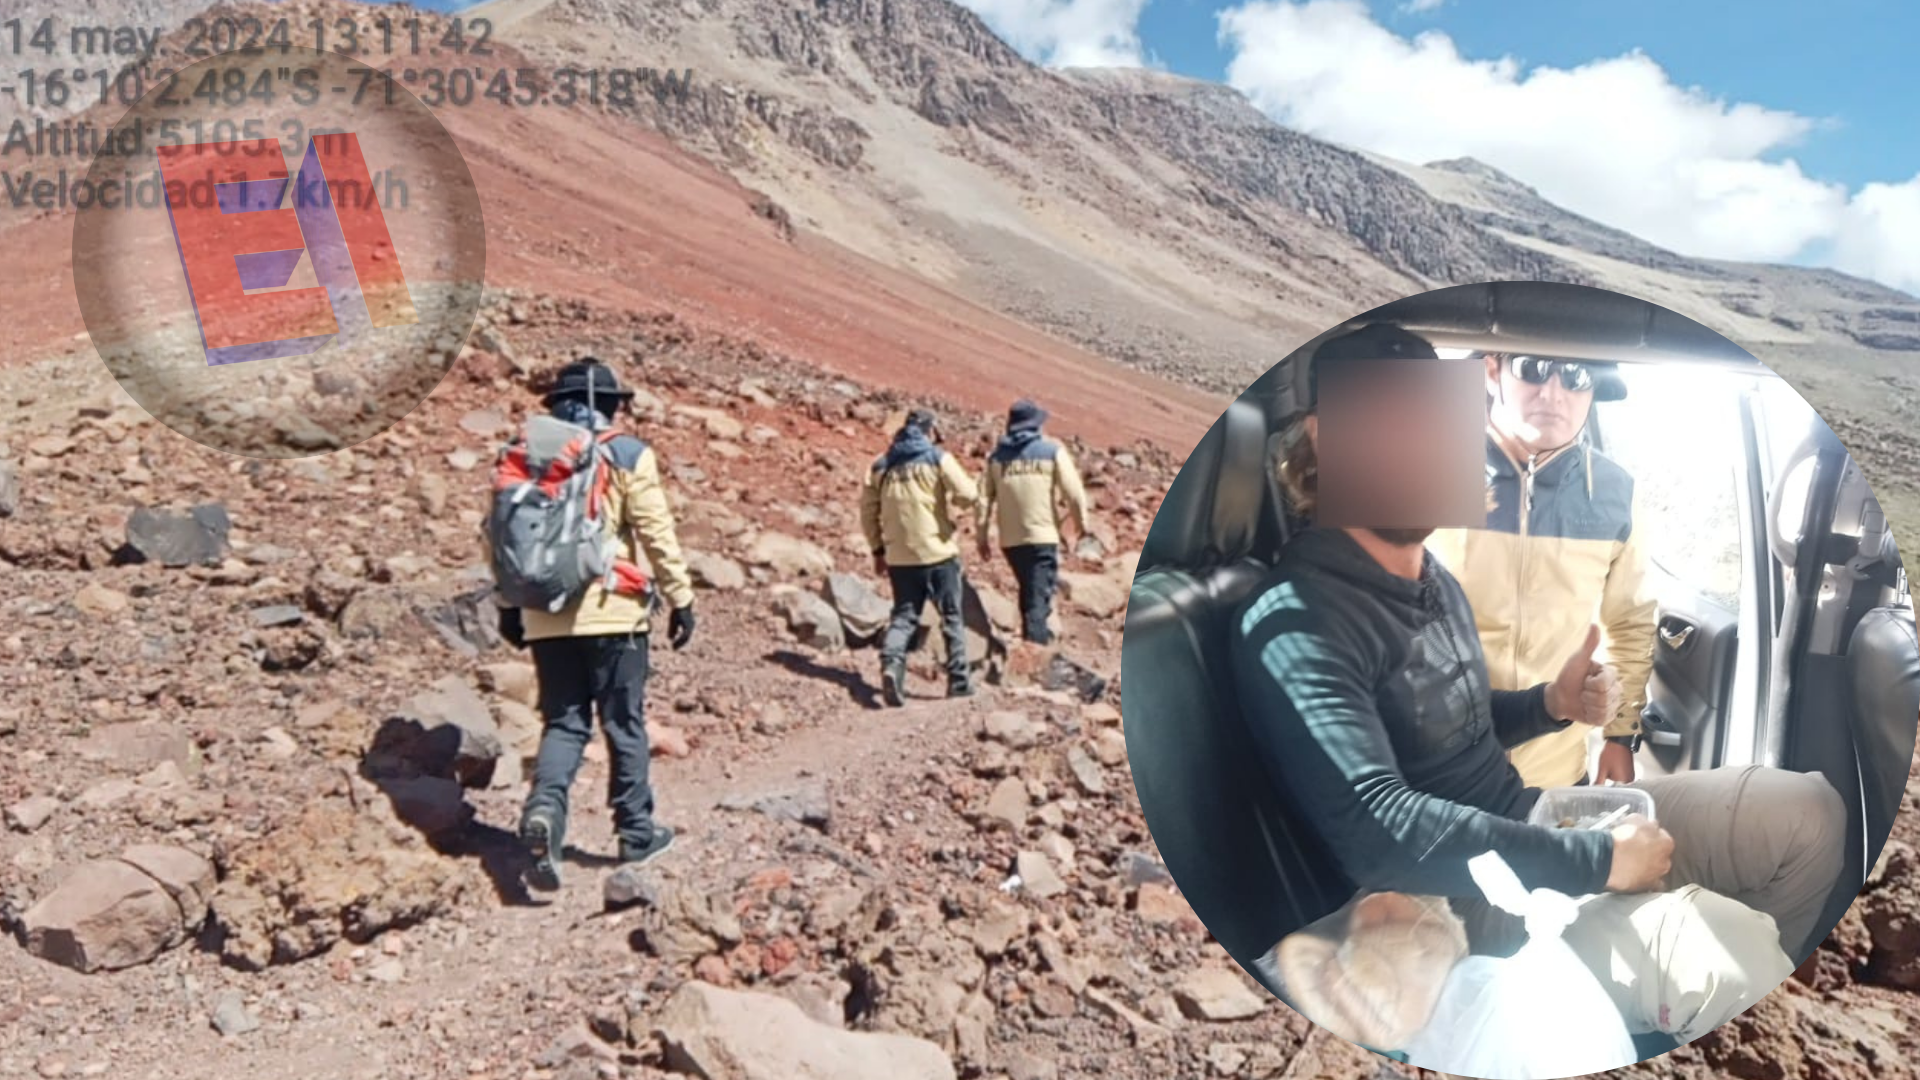 Miembros de la Policía de Alta Montaña rescatan a turista alemán que se había perdido en ascenso al Chachani